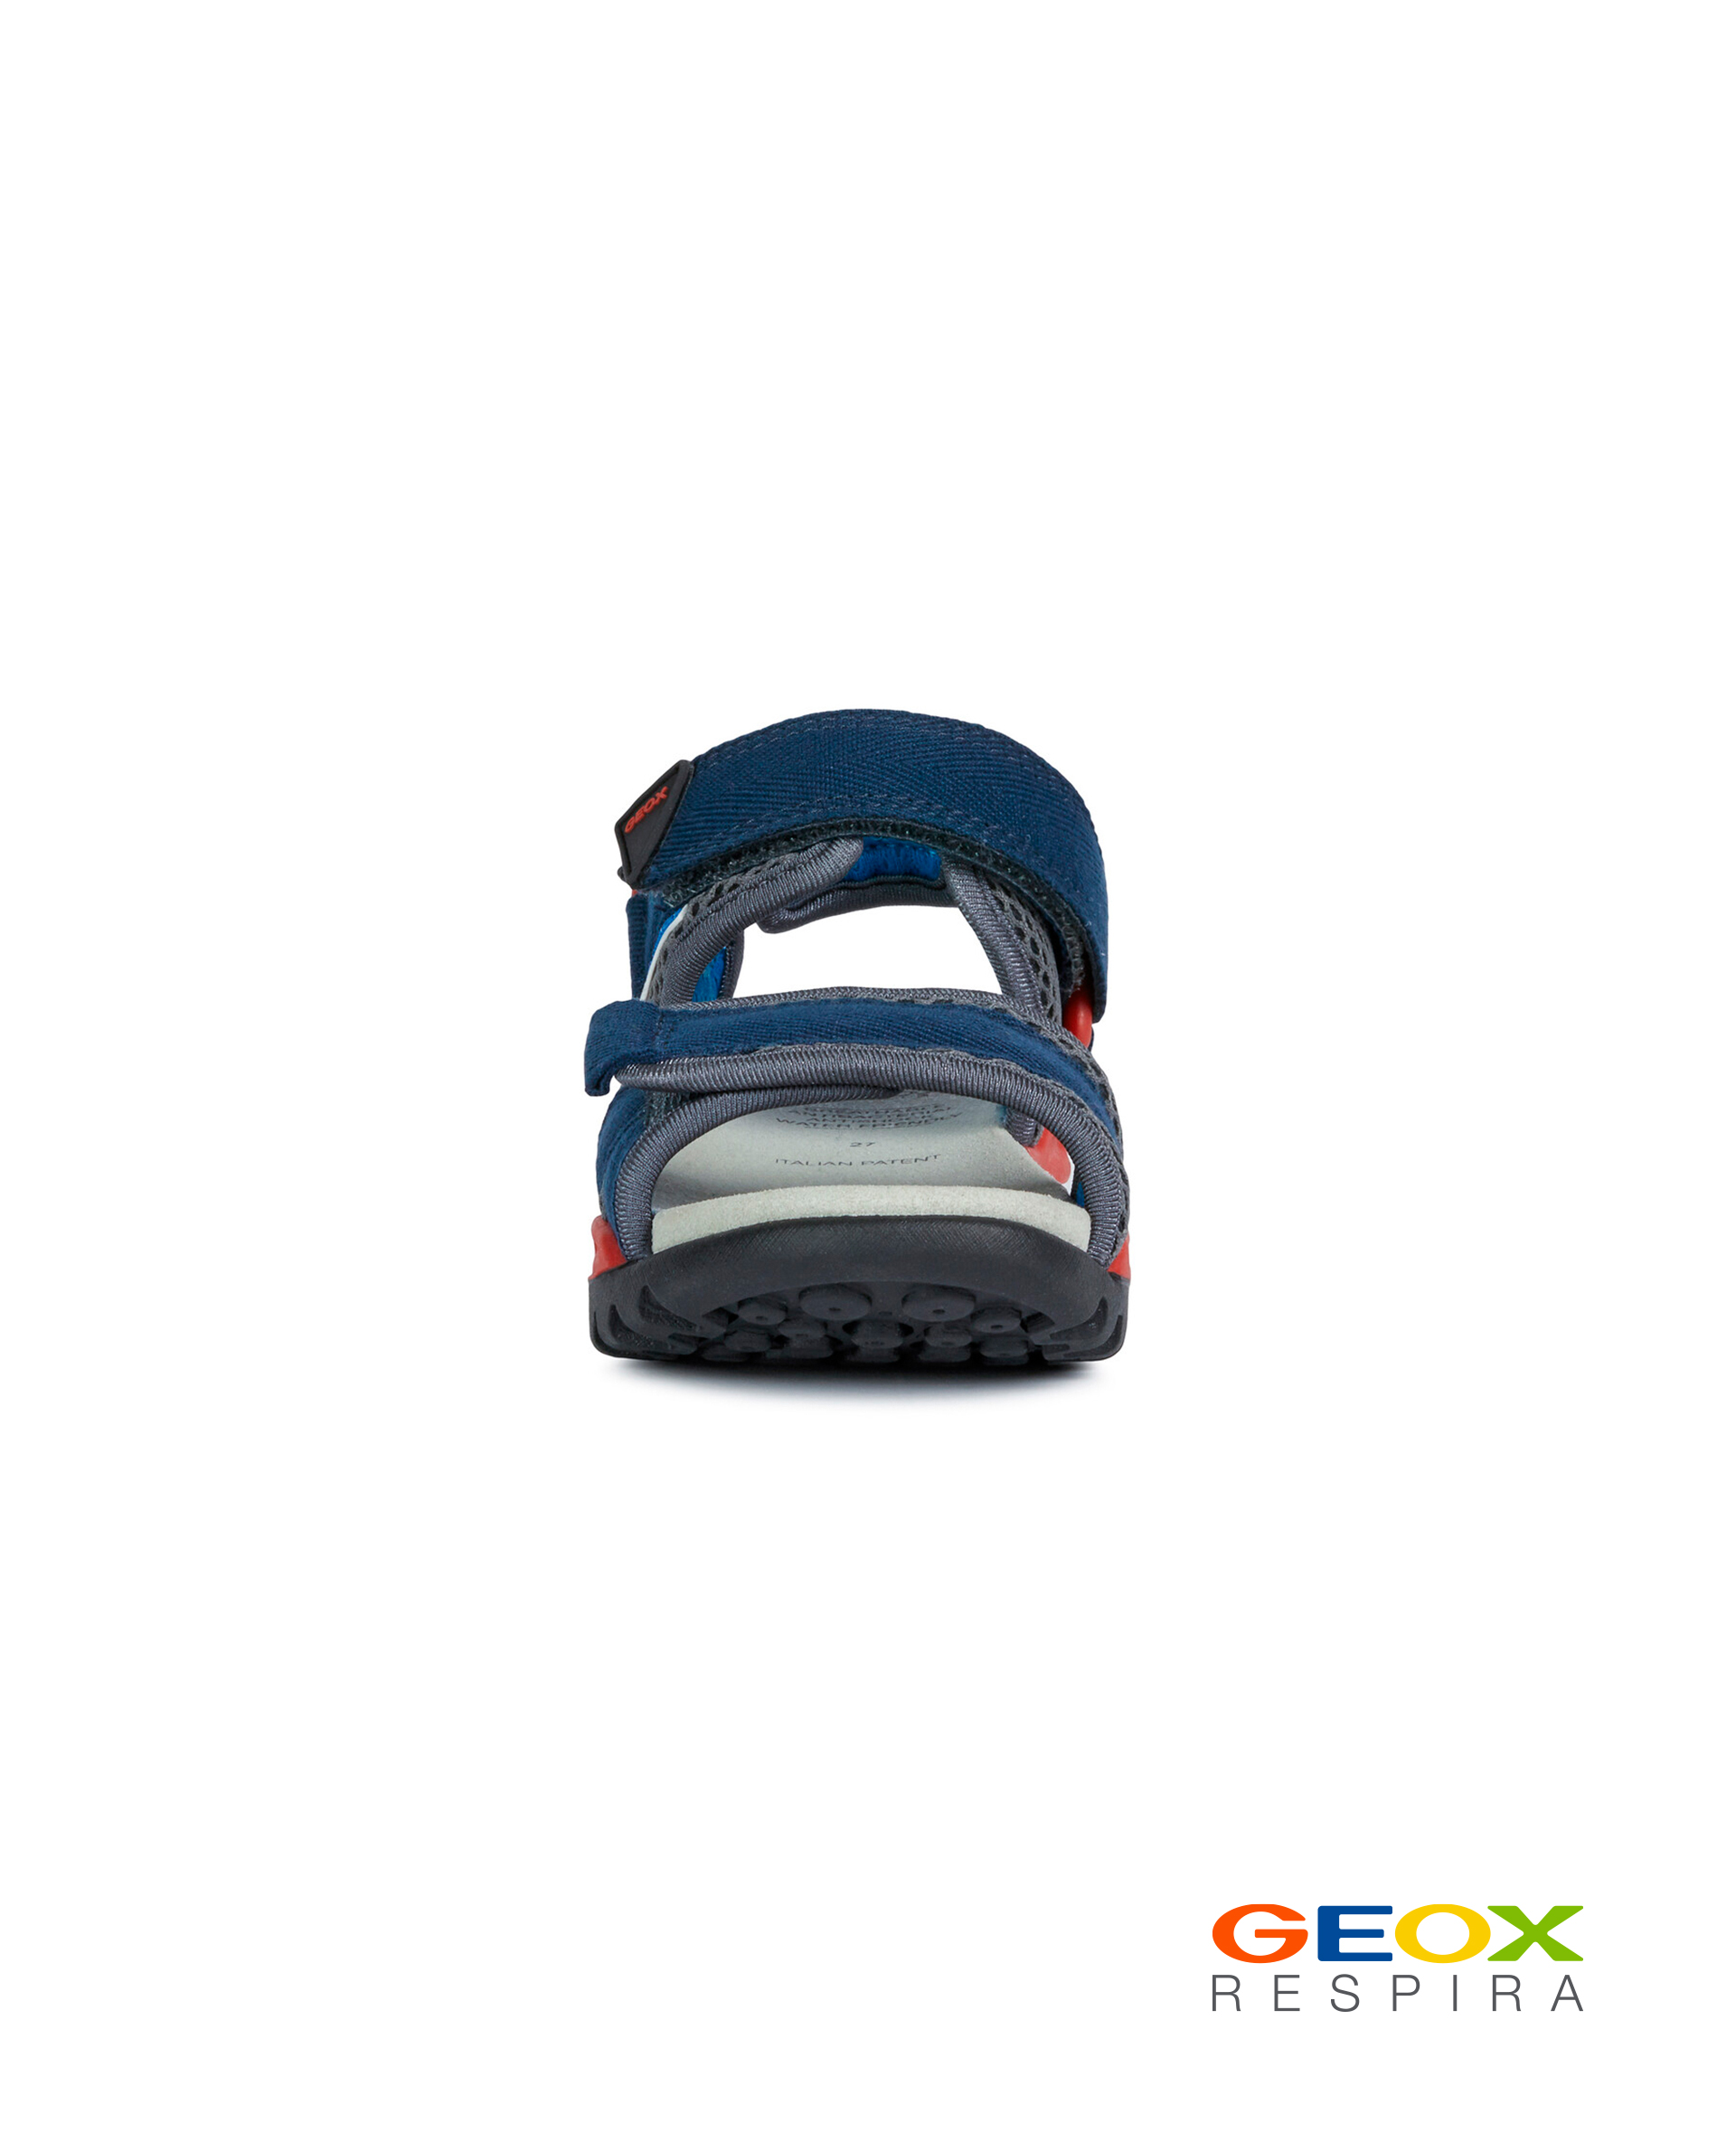 Синие сандалии Geox для мальчика J020RC01411C0735, размер 37, цвет синий - фото 2